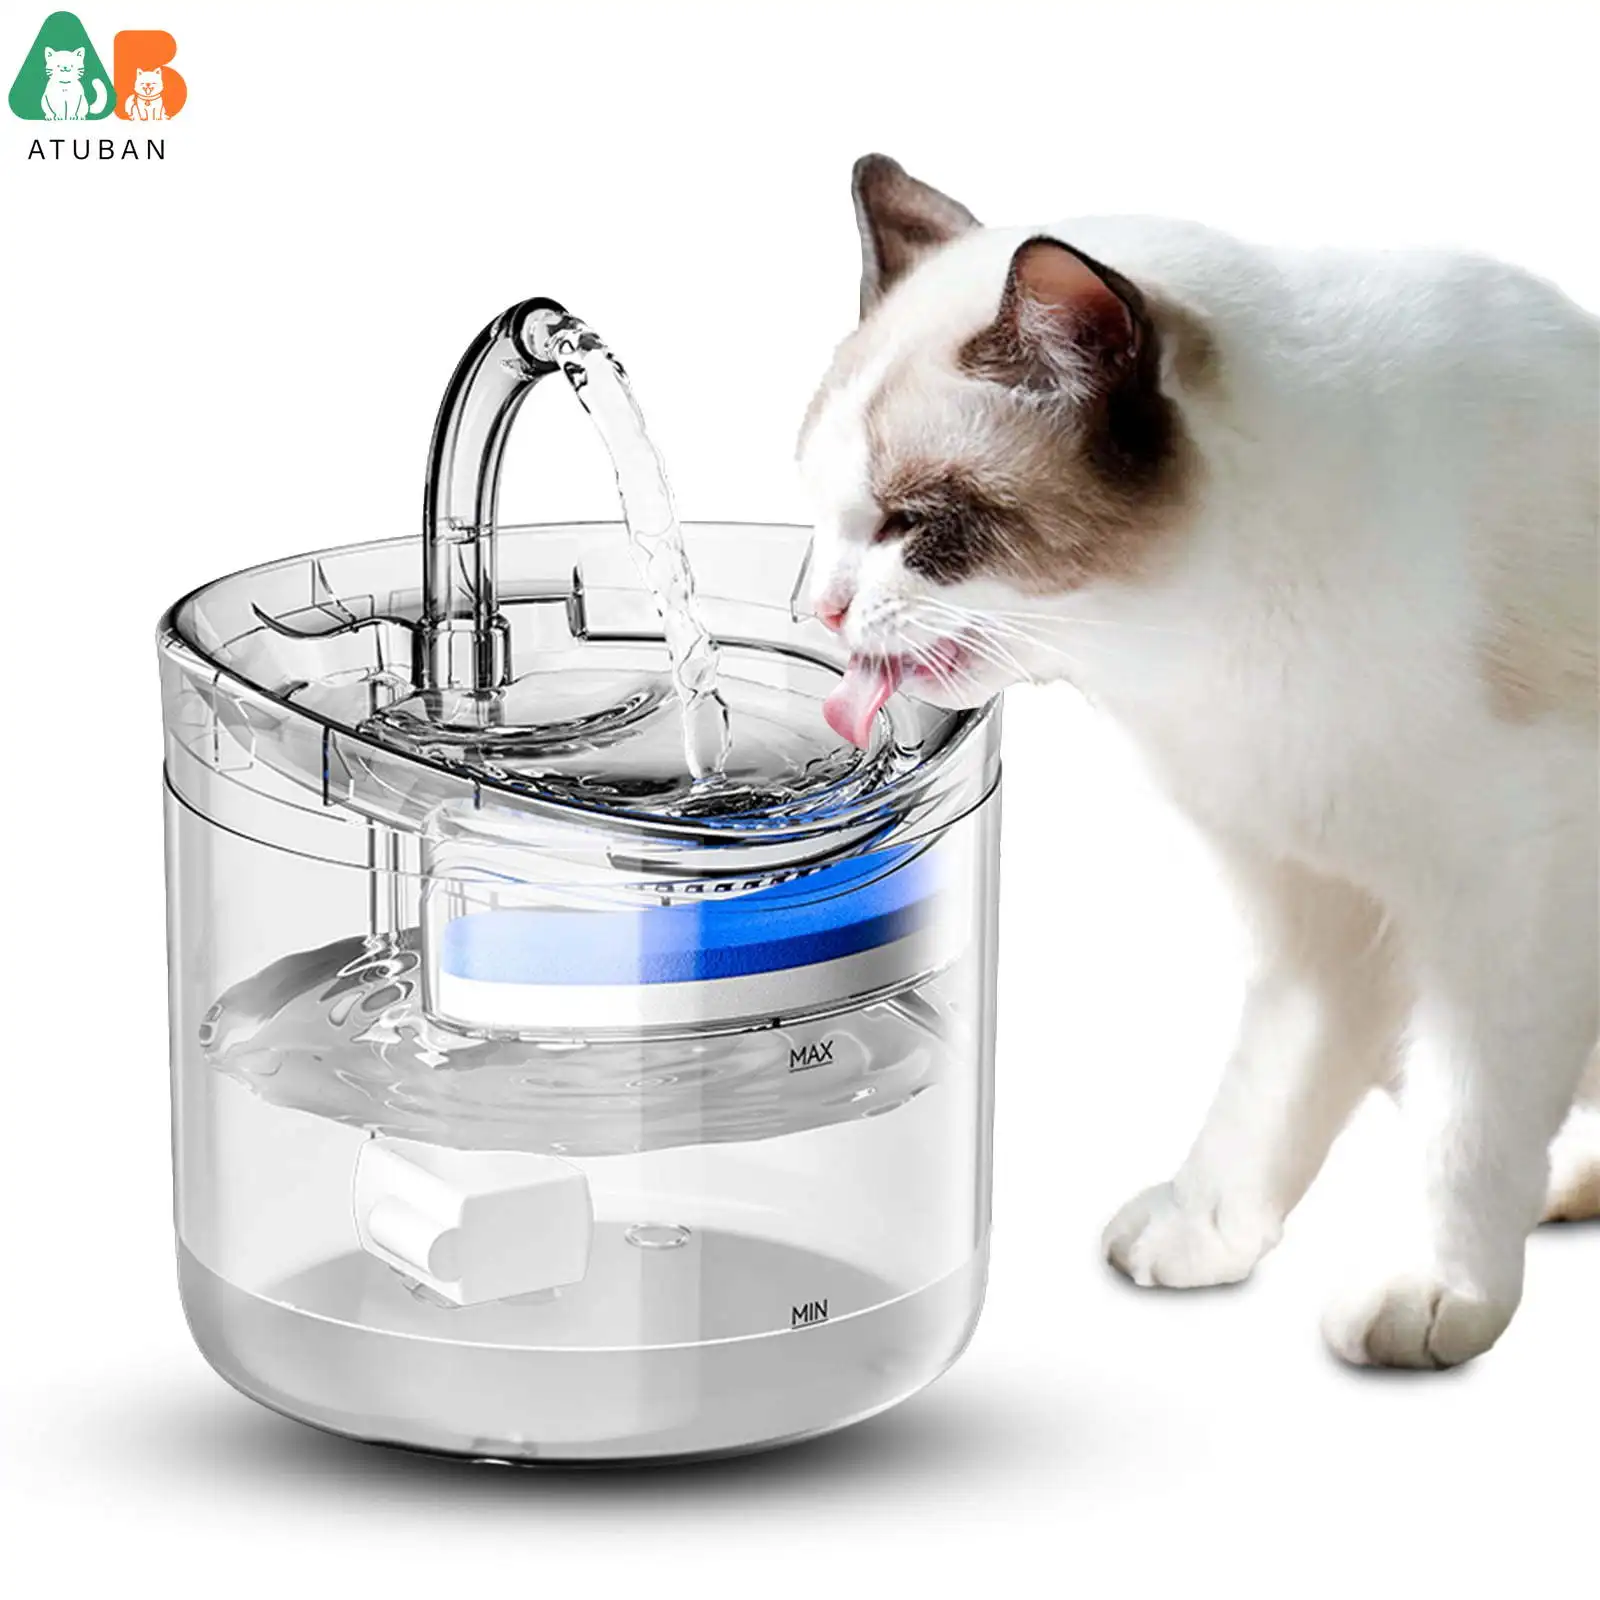 

Автофонтан для домашних животных, 60 унций, автоматический водный фонтан для кошек и собак, способствует увлажнению, 2 регулируемых режима потока воды, фильтры в комплекте